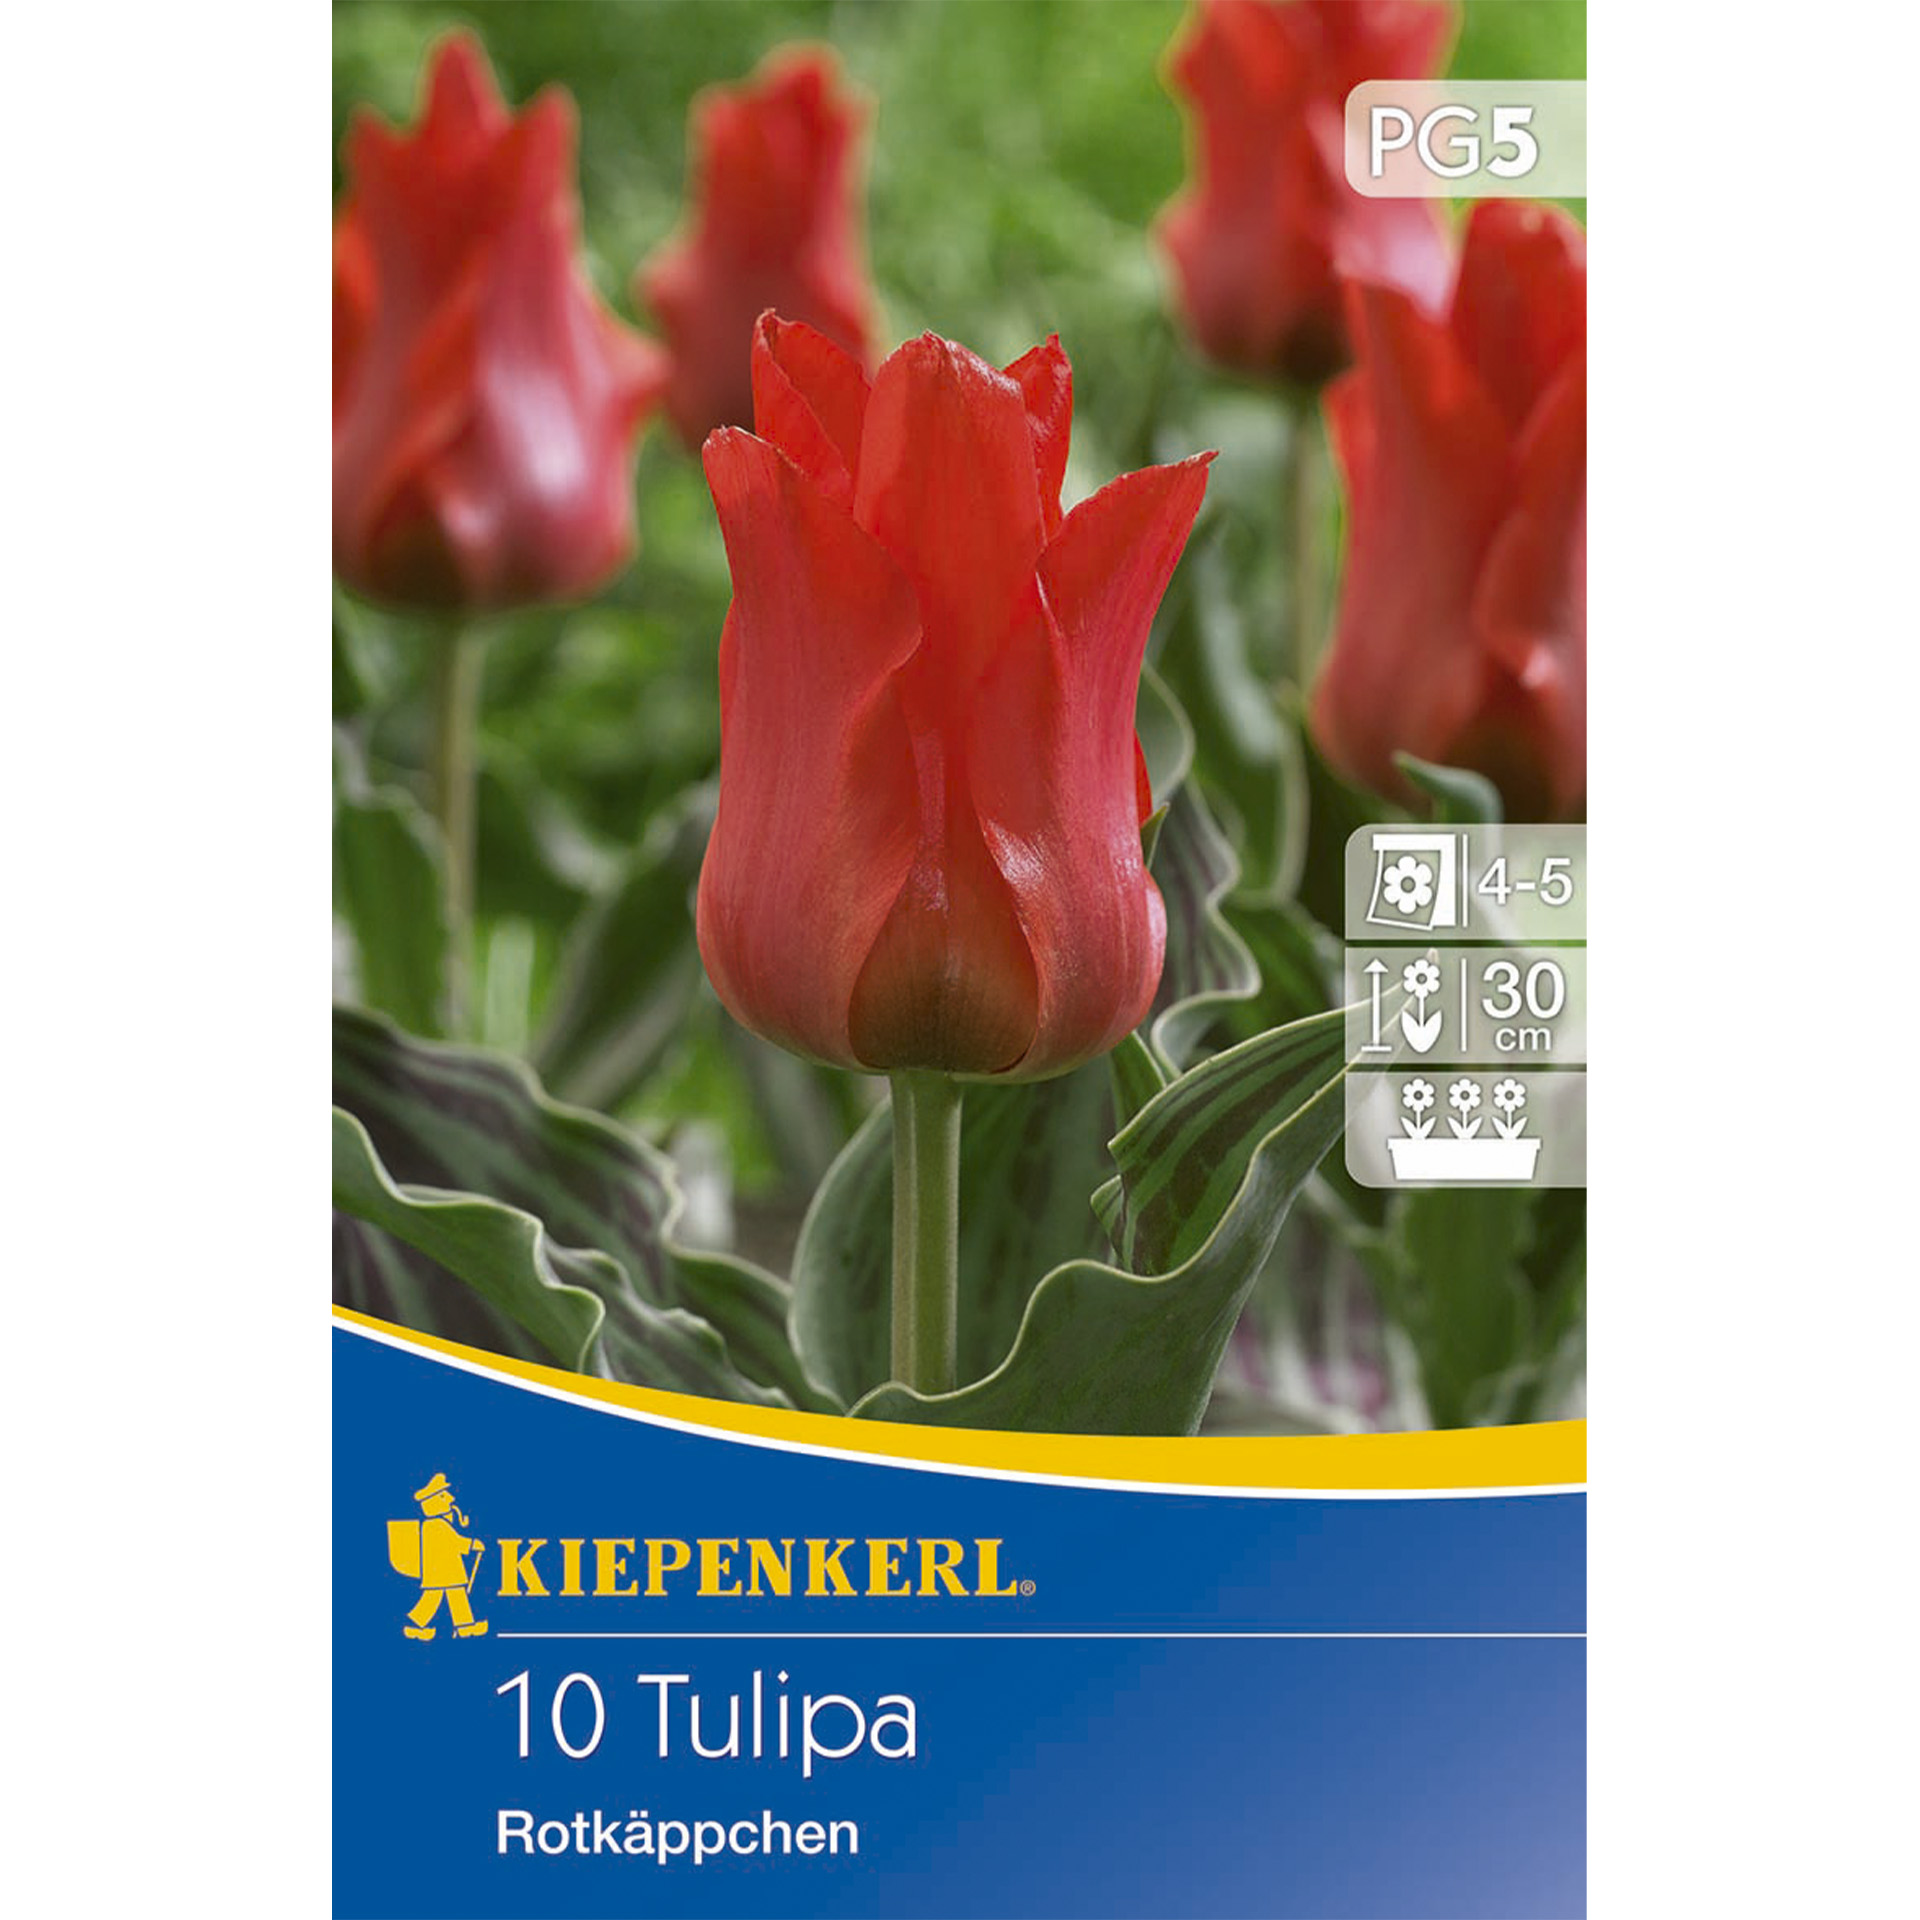 Intensiv rot blühende Tulpe mit gewellten Blättern